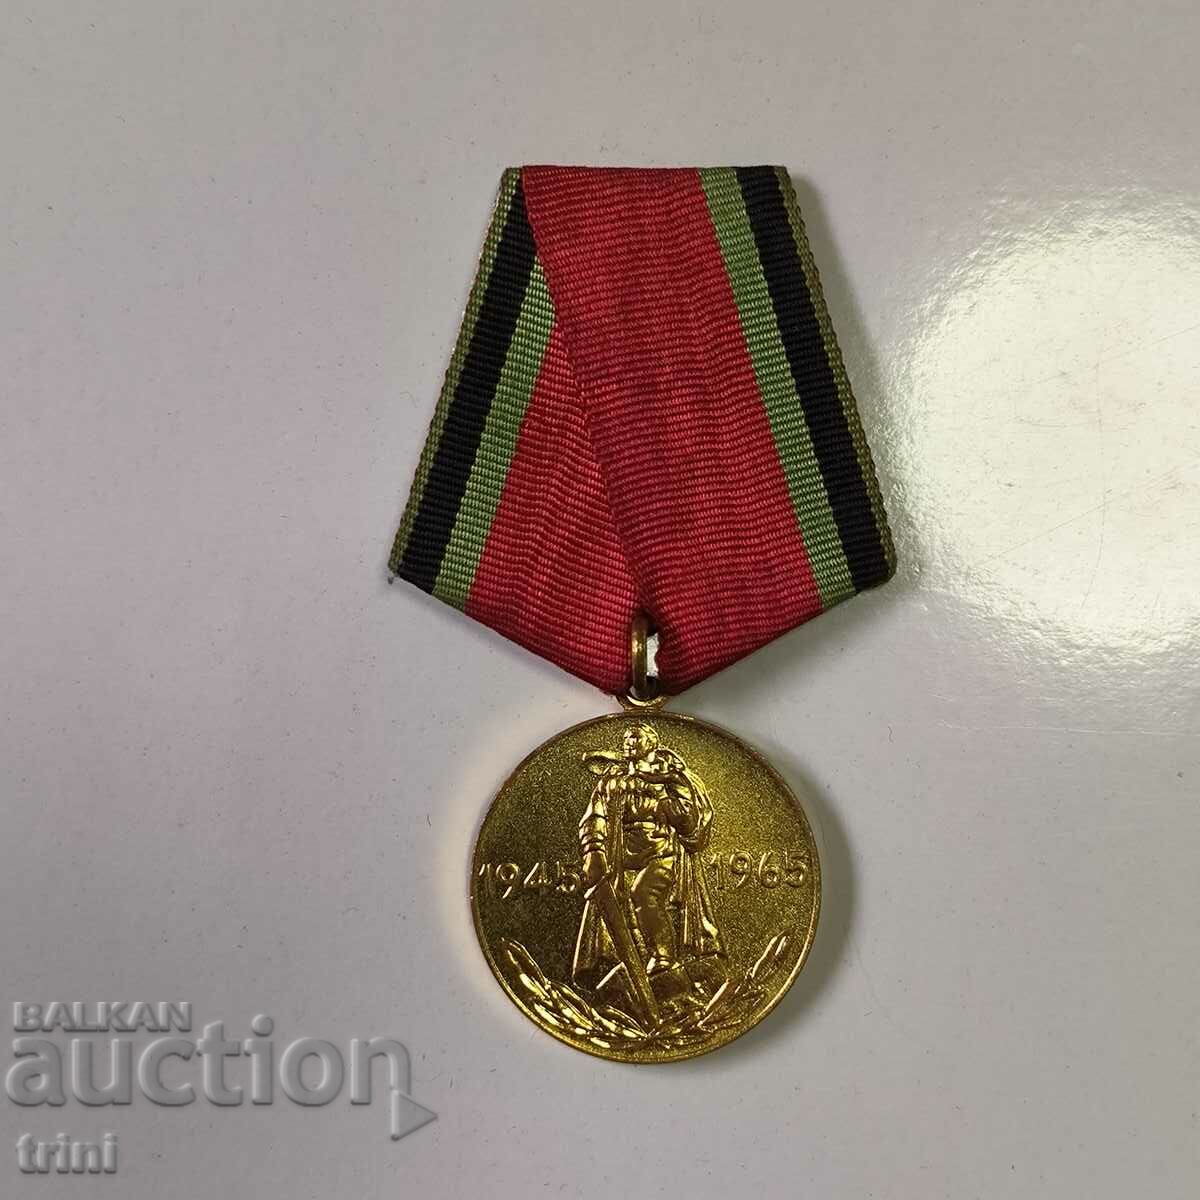 Μετάλλιο 25 χρόνια νίκη στον Β' Παγκόσμιο Πόλεμο ΕΣΣΔ